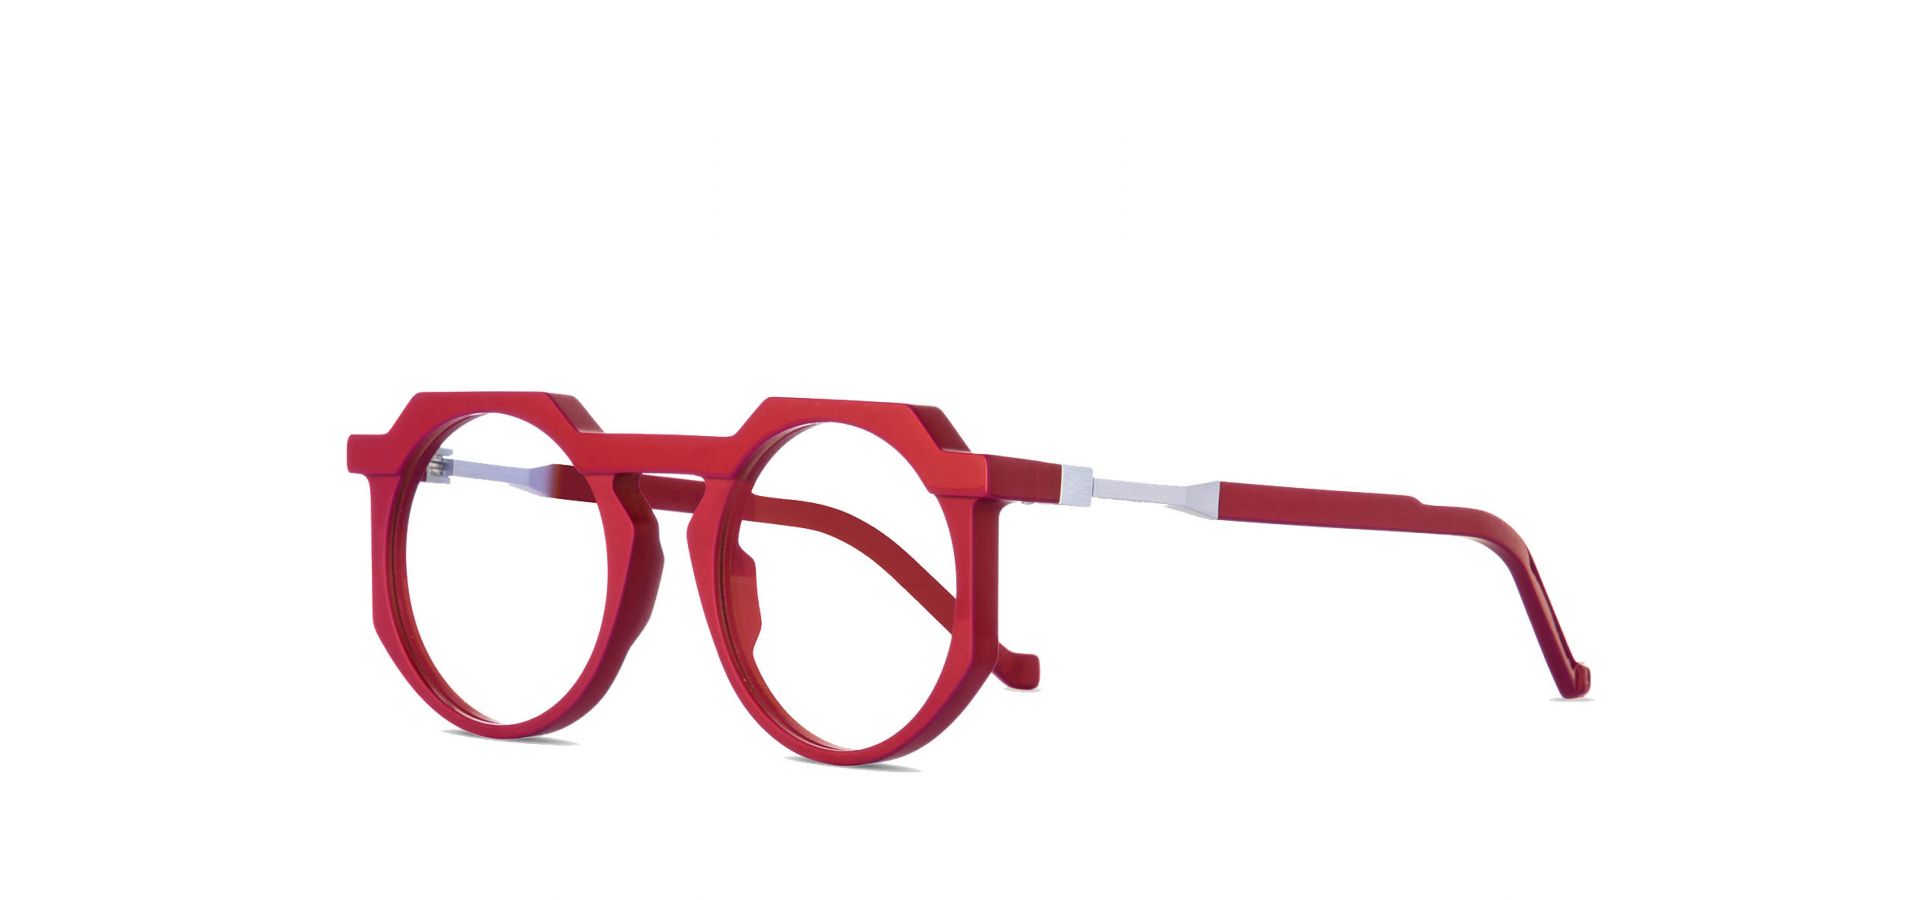 Korekcijska očala VAVA WL0027 RED BLACK: Velikost: 52/22/140, Spol: unisex, Material: acetat/kovinska